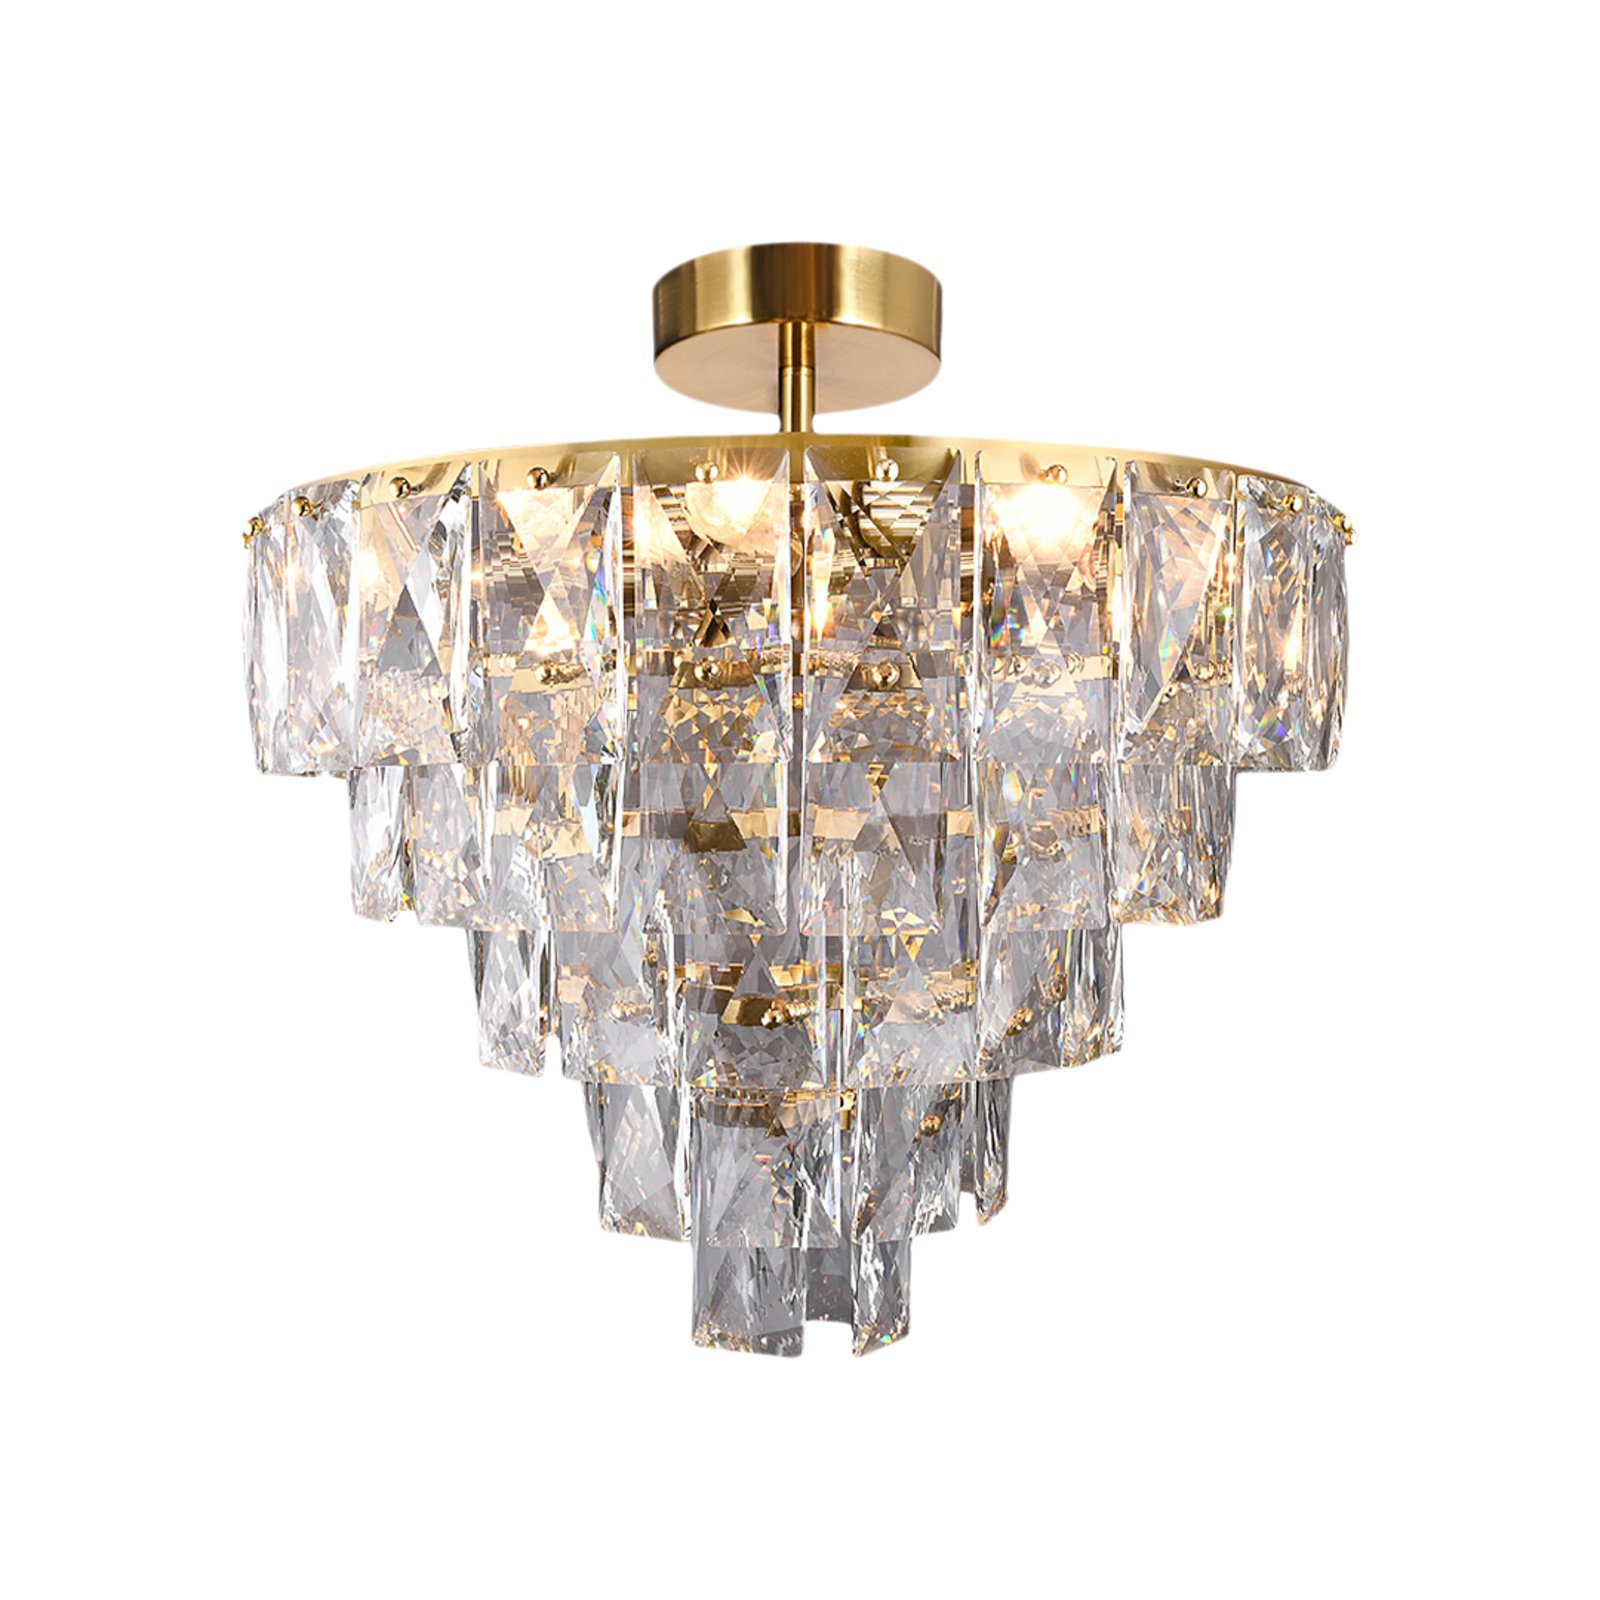 Lampa sufitowa Chelsea z metalowymi kryształkami w kolorze złotym, Ø 50 cm